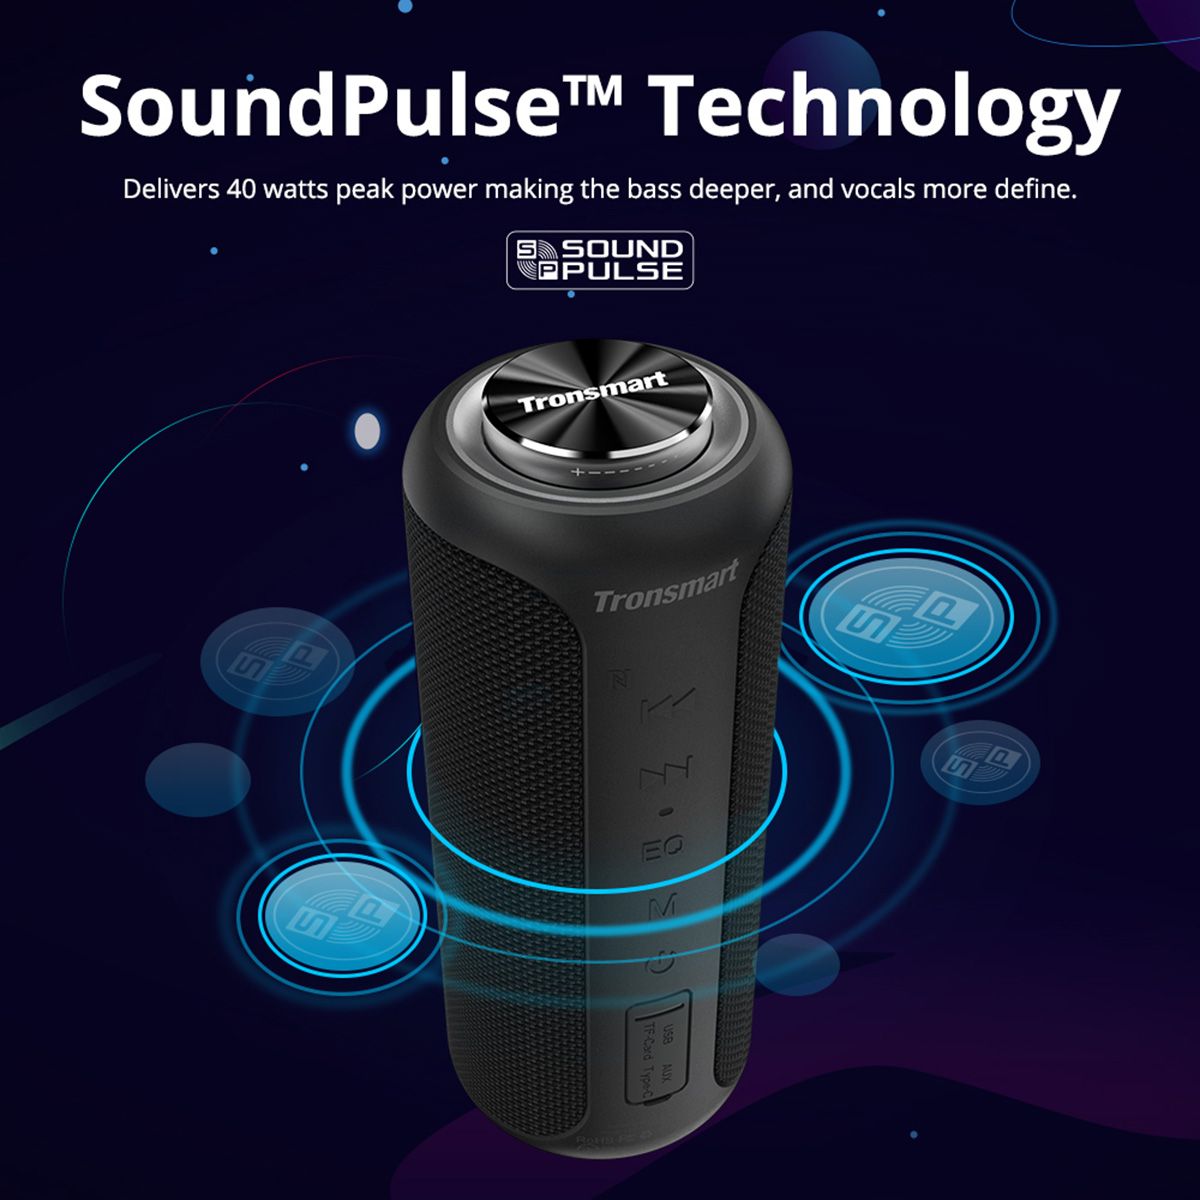 Tronsmart-T6-Plus-40W-bluetooth-Speaker-Wireless-Soundbar-TWS-NFC-TF-Card-6600mAh-Deep-Bass-Speaker-1655488